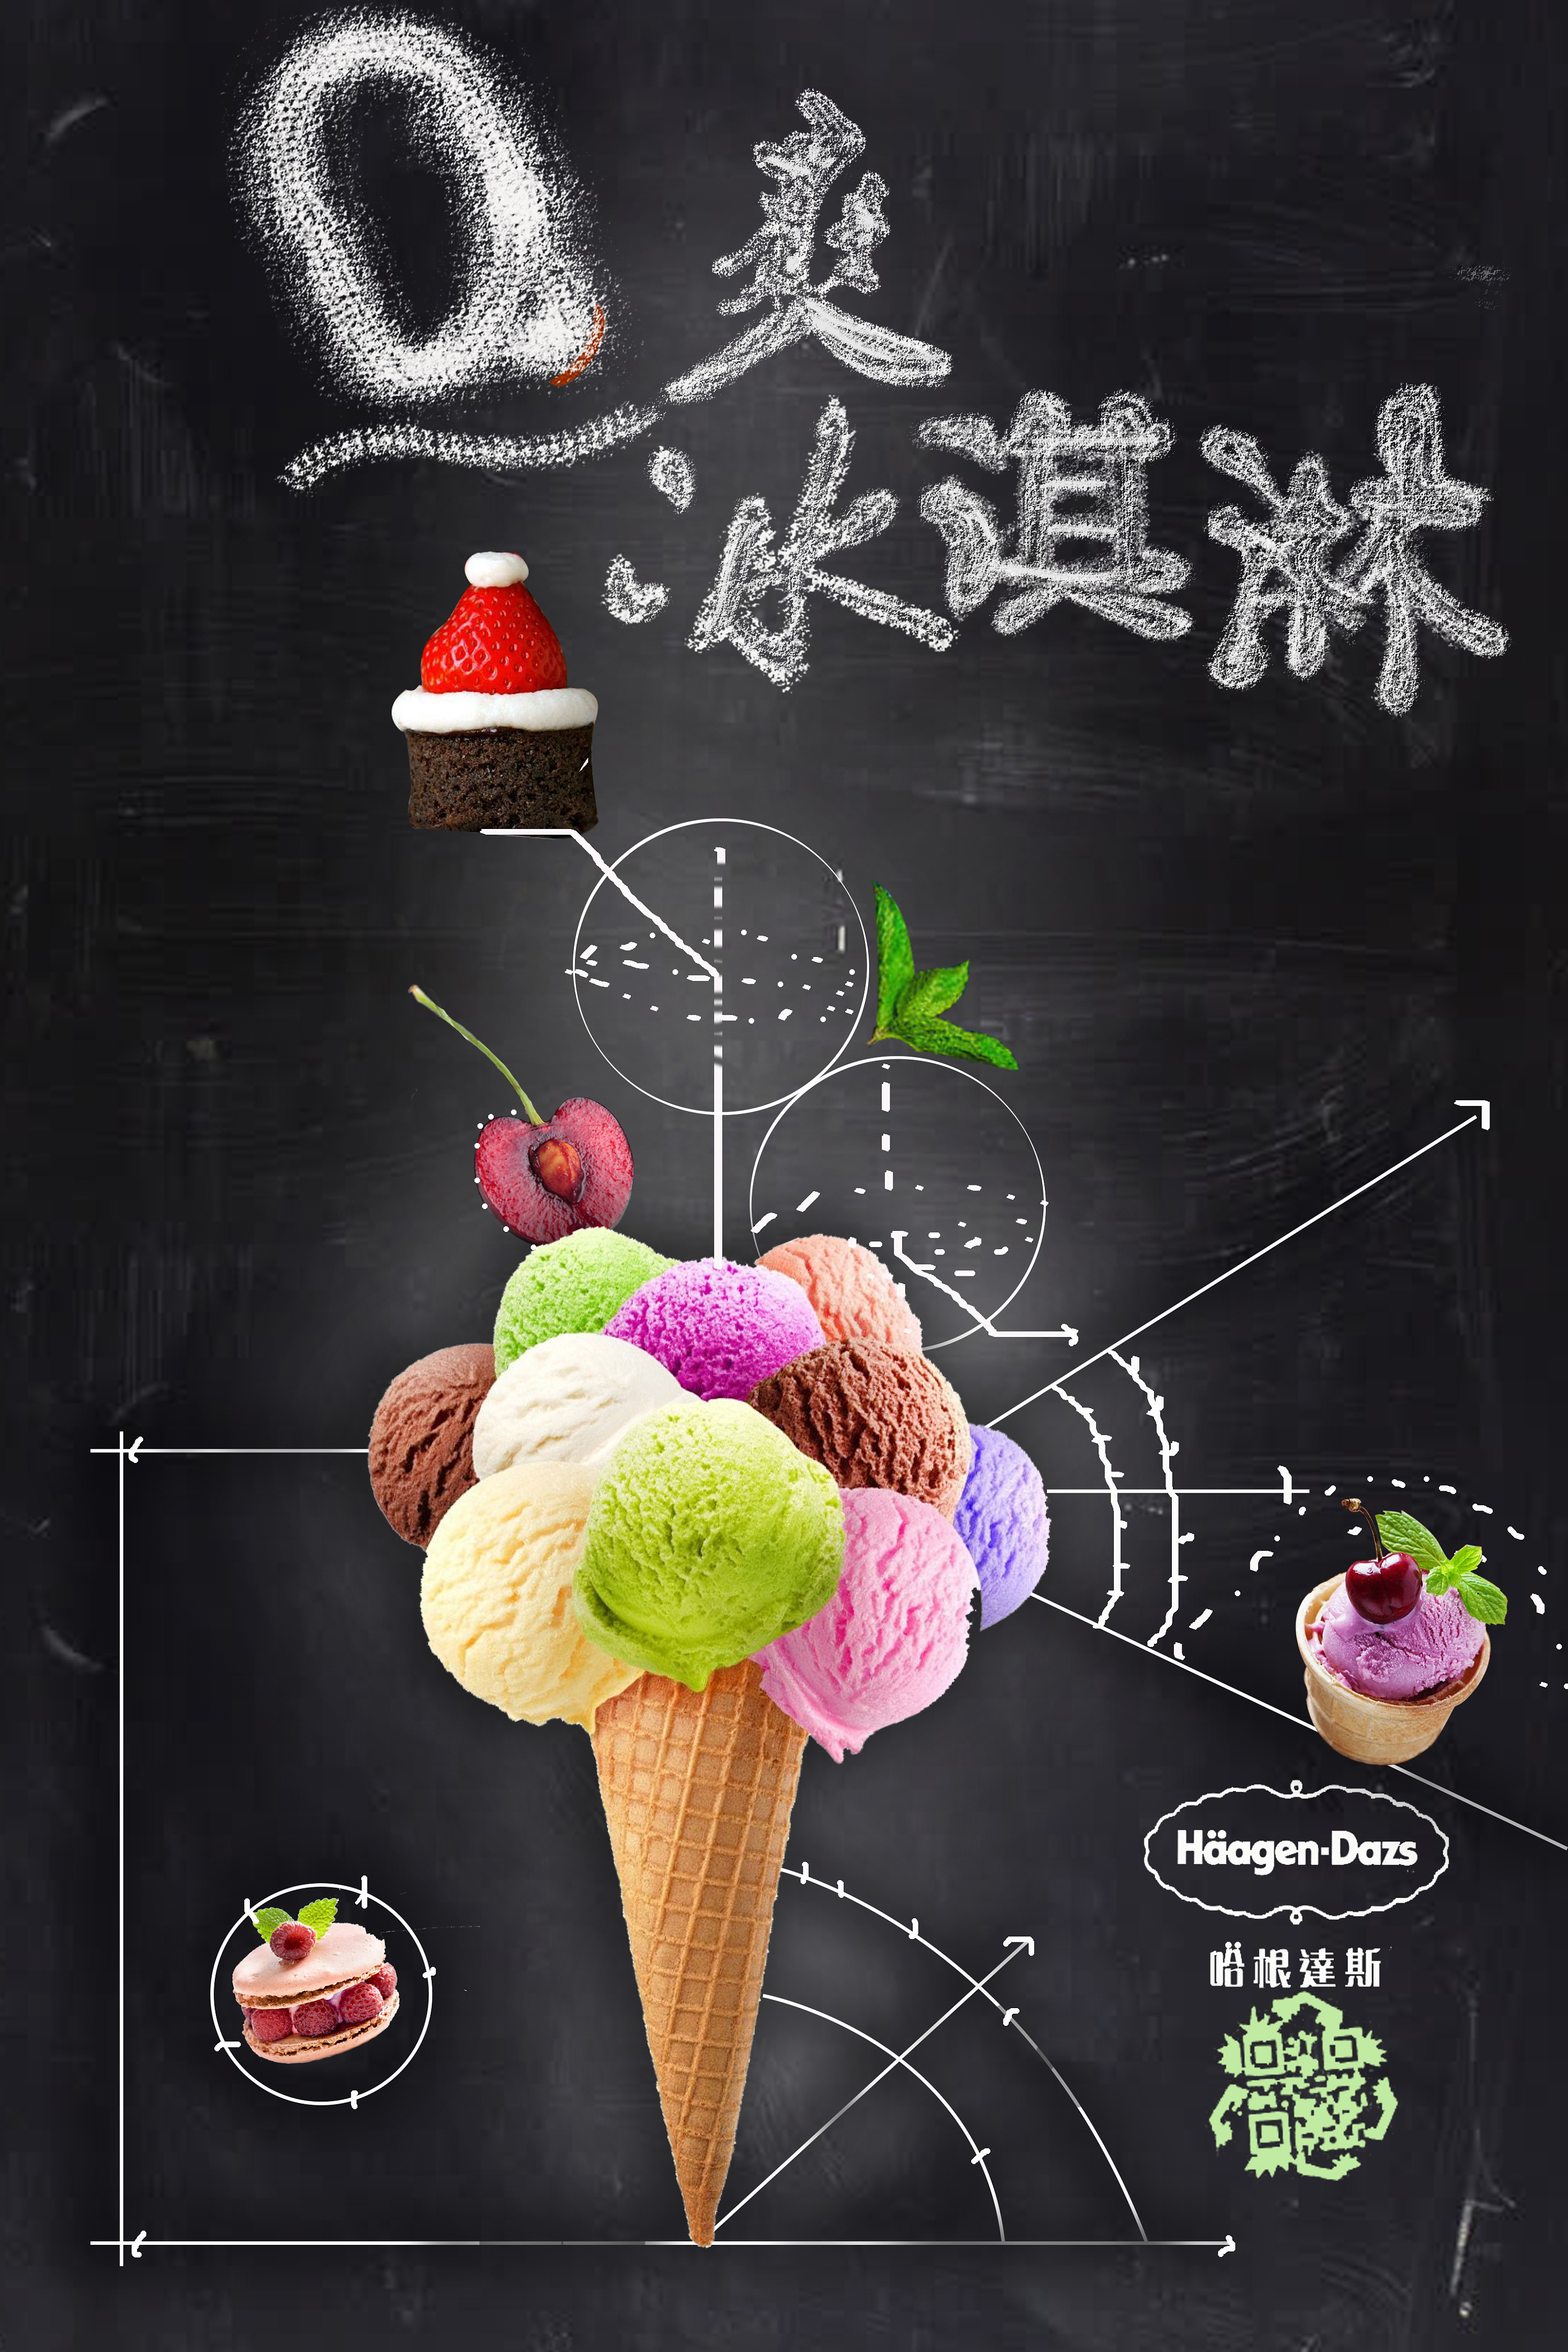 硬冰淇淋海报图片